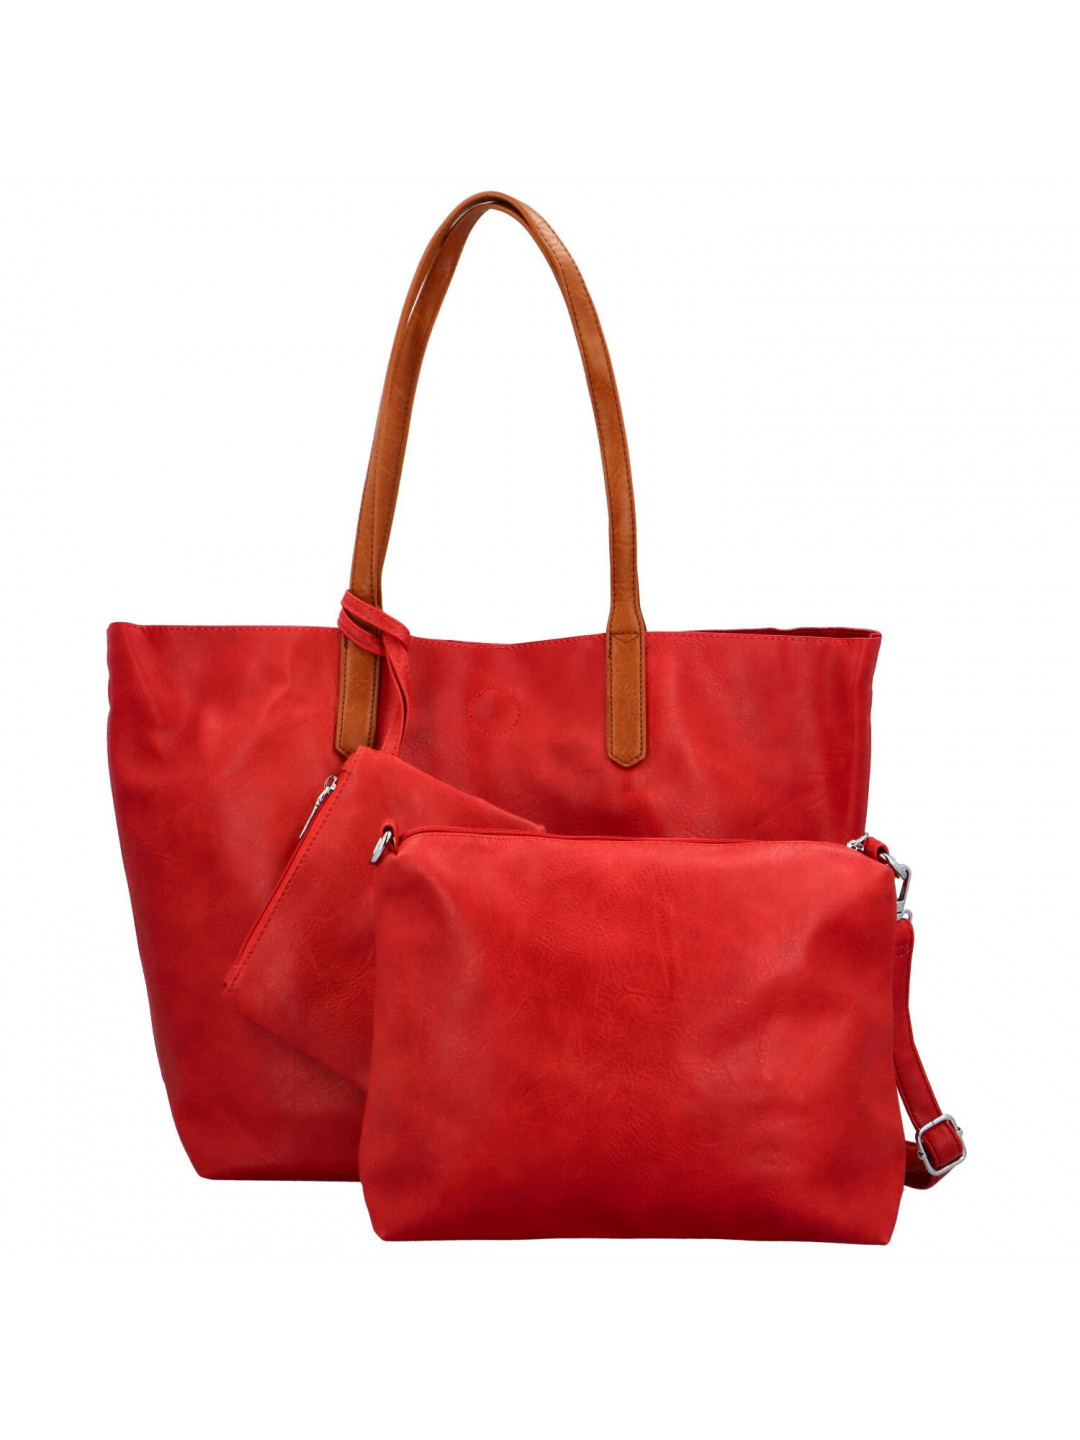 Trendy dámská koženková kabelka 2v1 na rameno Ignáta červená